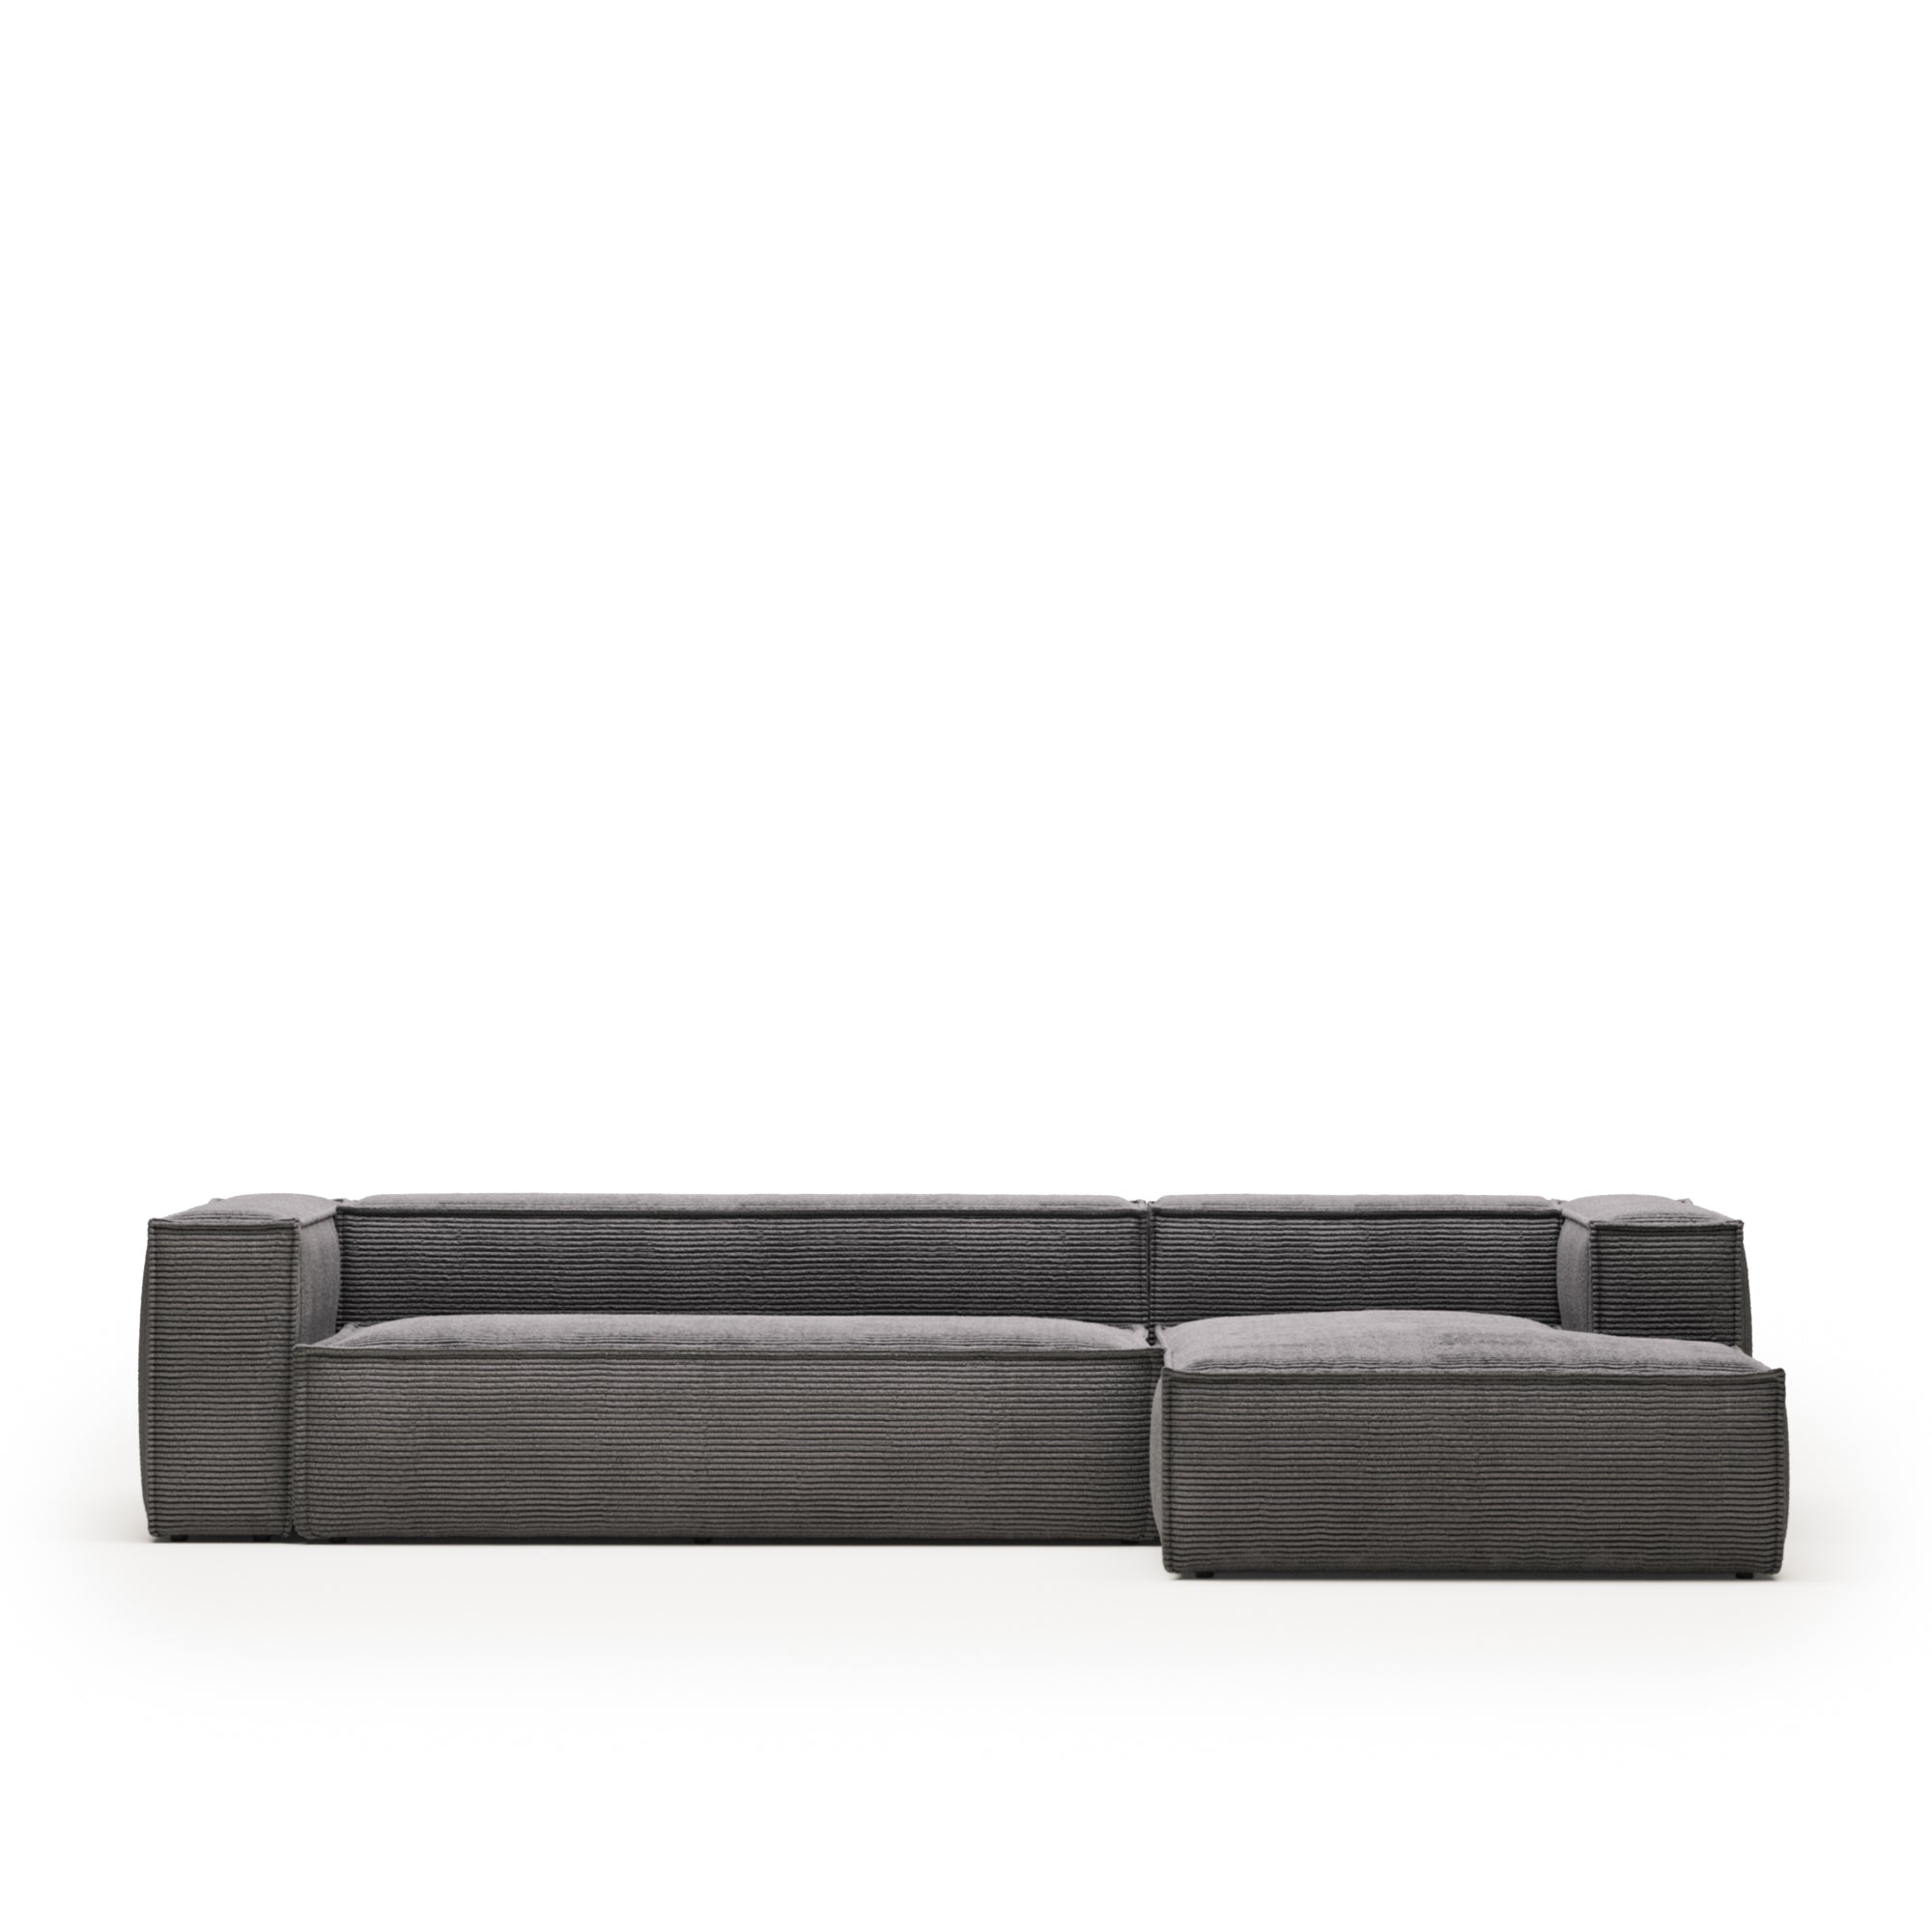 Blok 4 személyes kanapé jobb oldali fekvőfotellel, szürke, széles varrású kordbársonyból, 330 cm